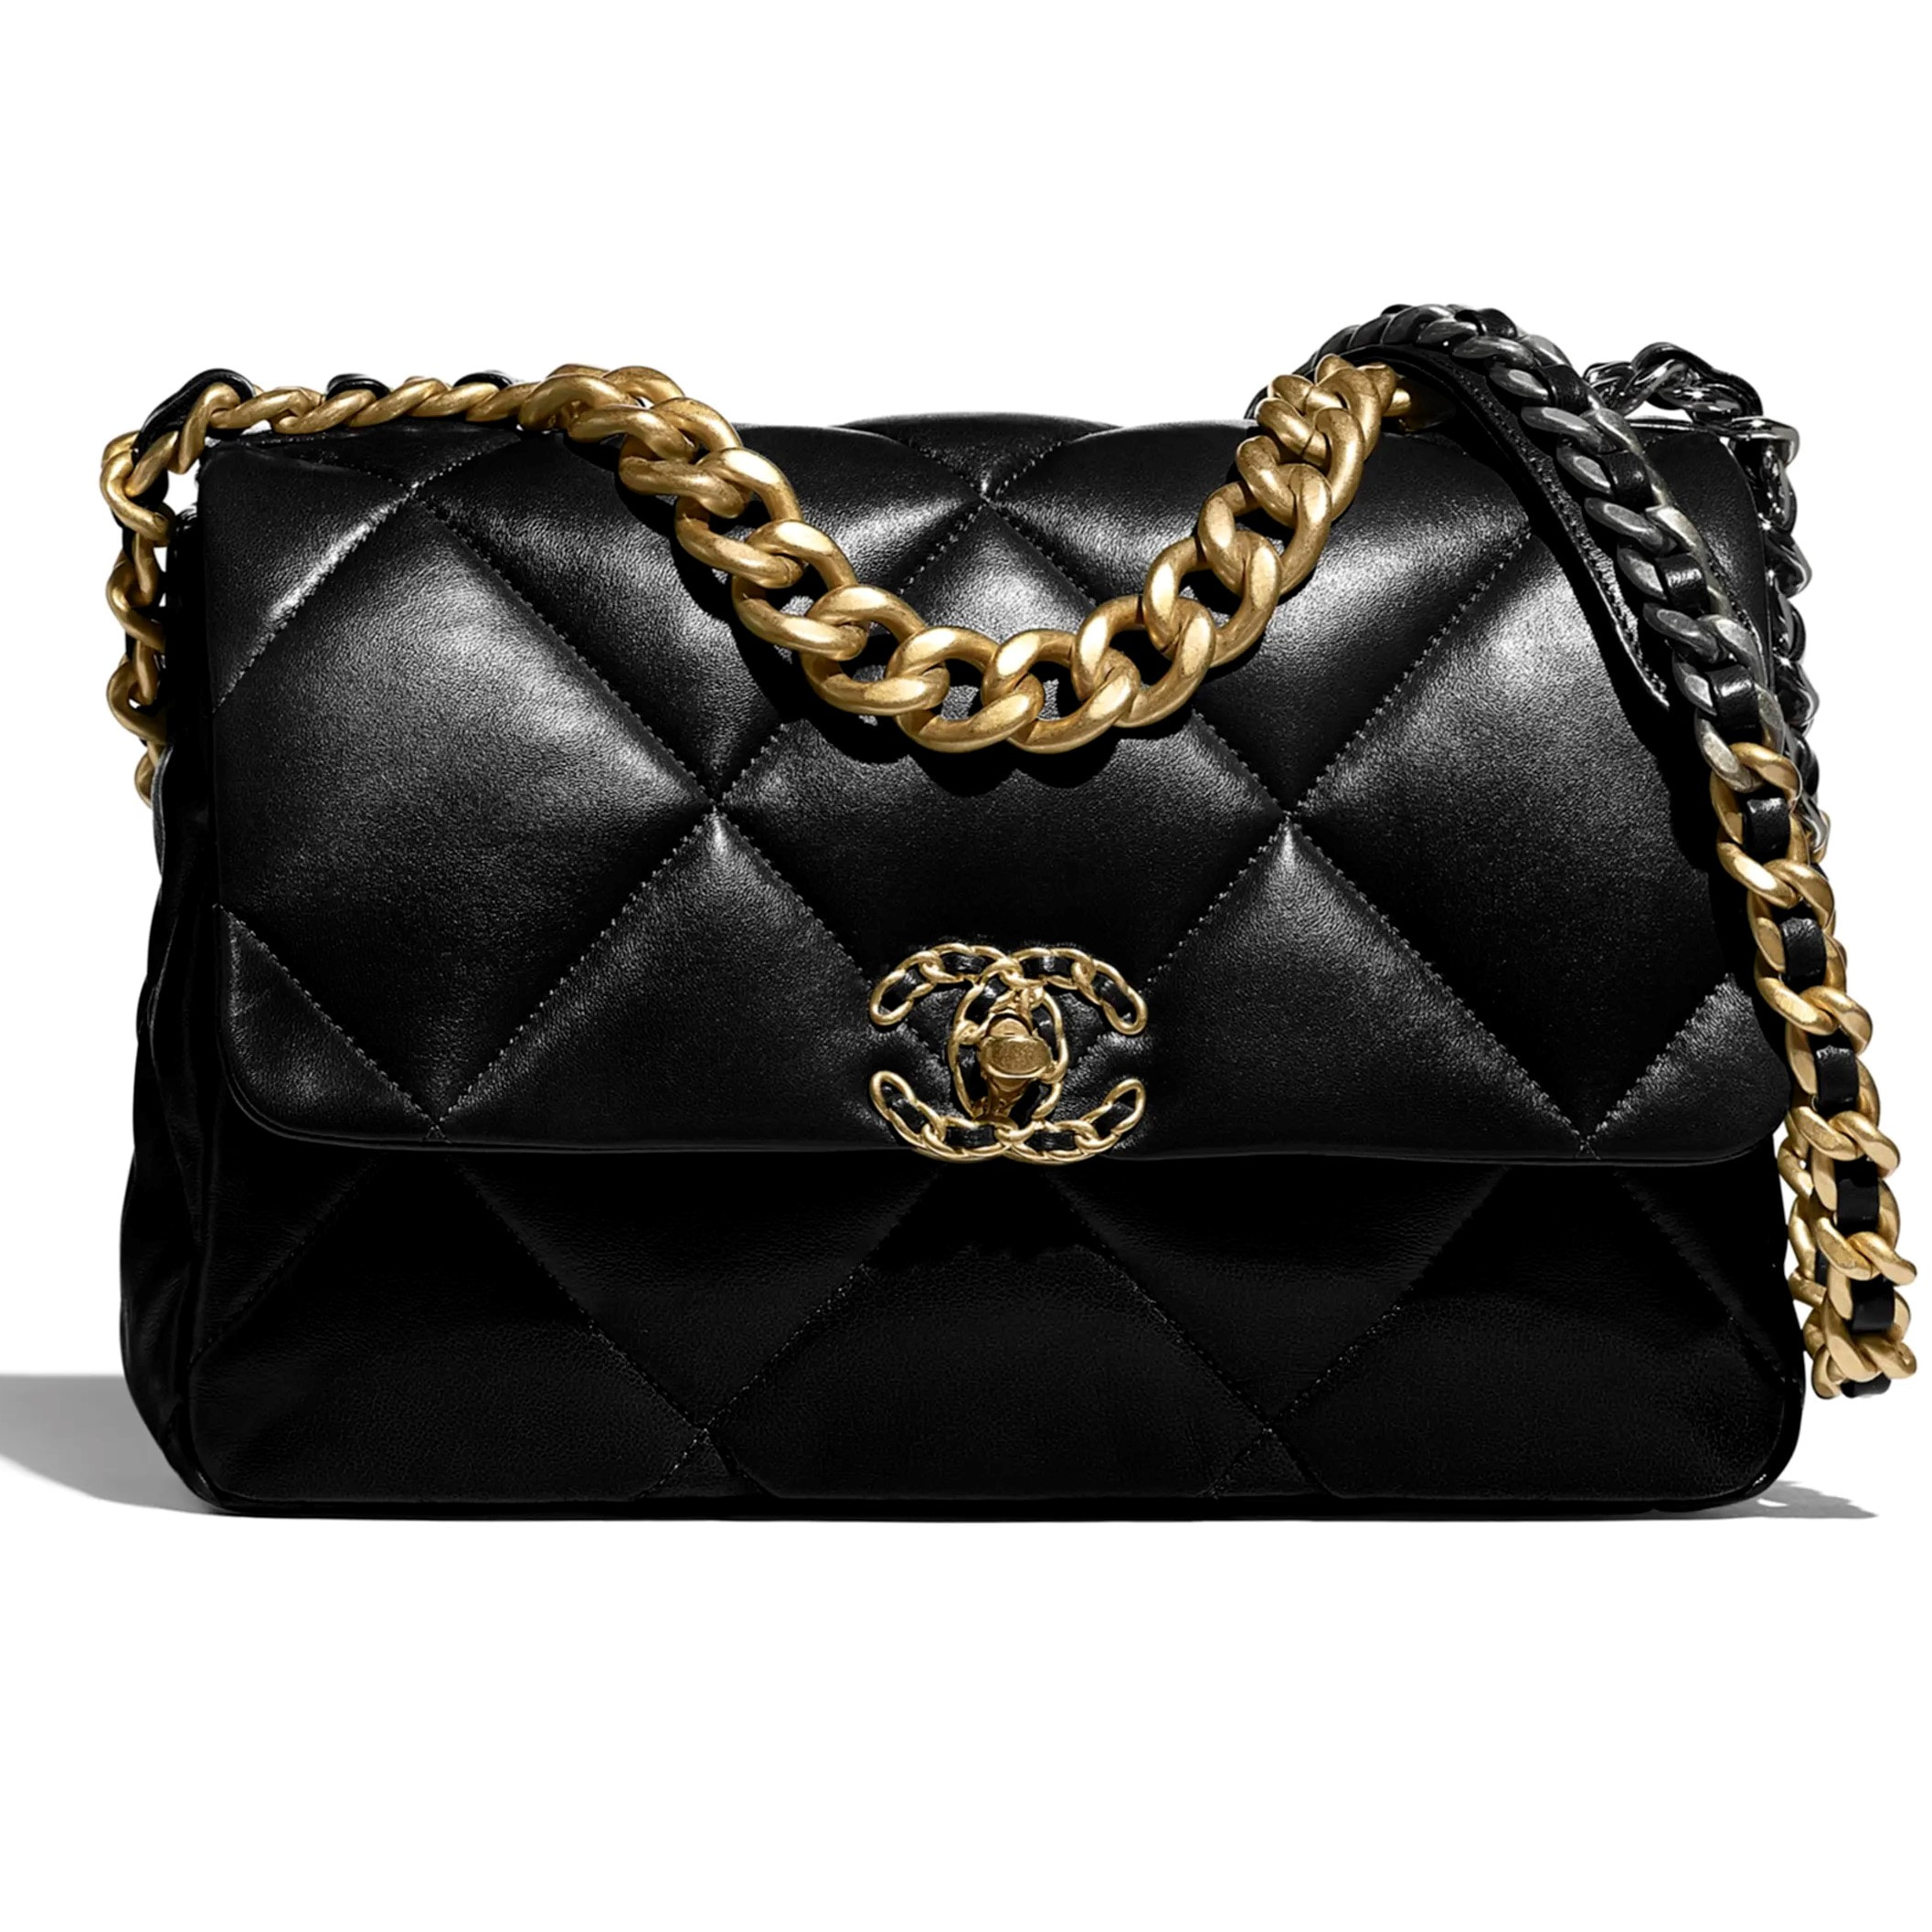 Túi xách Dior Saddle Bag {túi yên ngựa} siêu cấp da bê màu đen in trắng  size 20 cm – Túi xách cao cấp, những mẫu túi siêu cấp, like authentic cực  đẹp